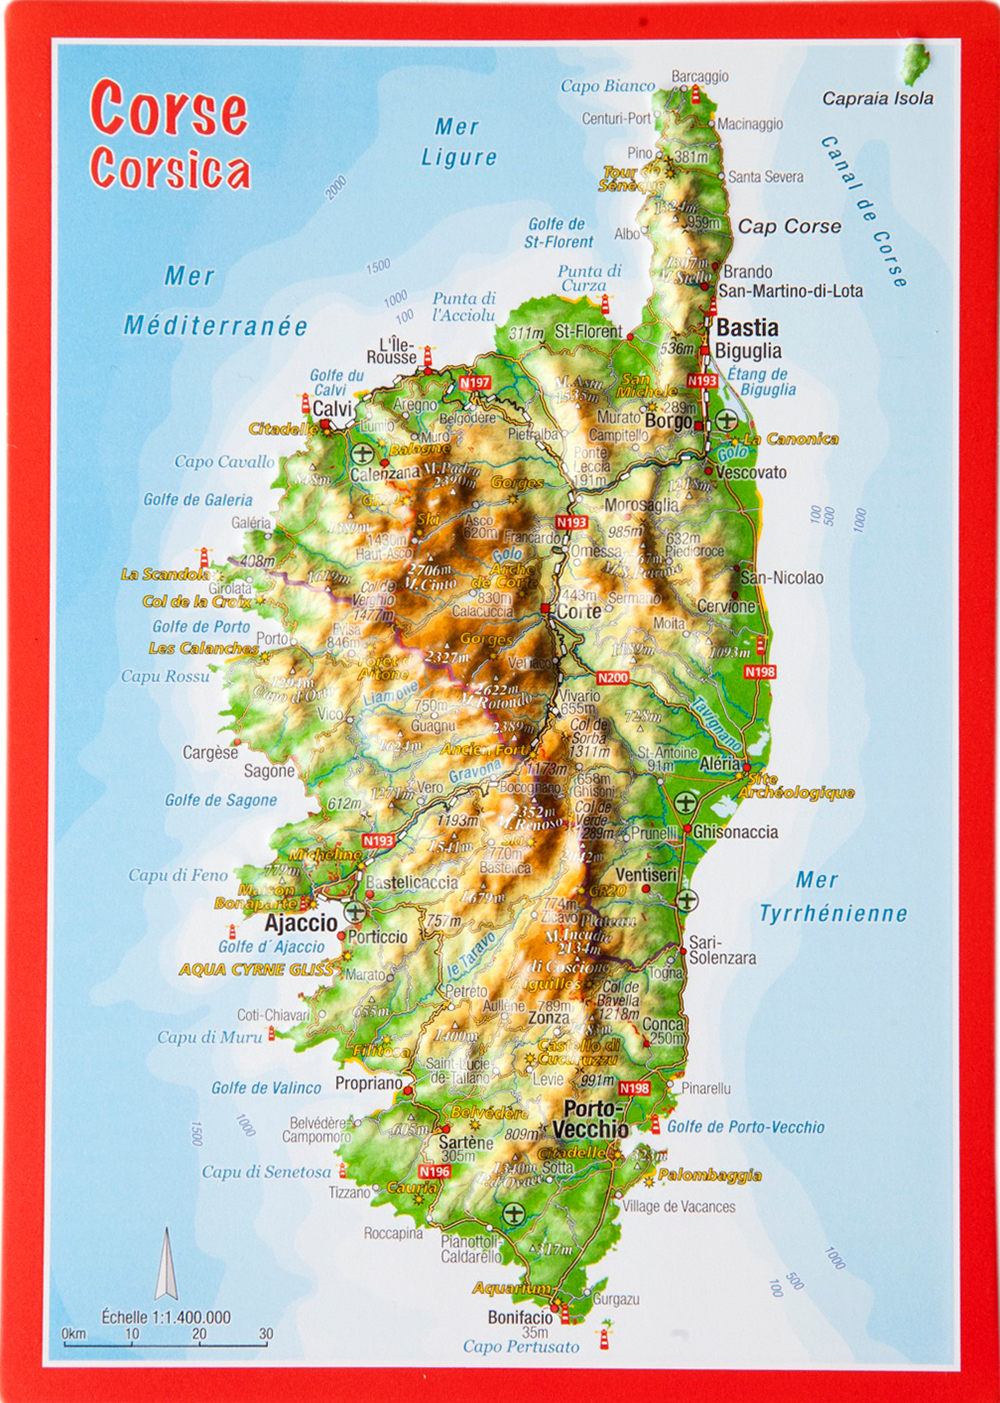 3D Reliefpostcard Corsica – Georelief – 3D Reliefkarten und ...